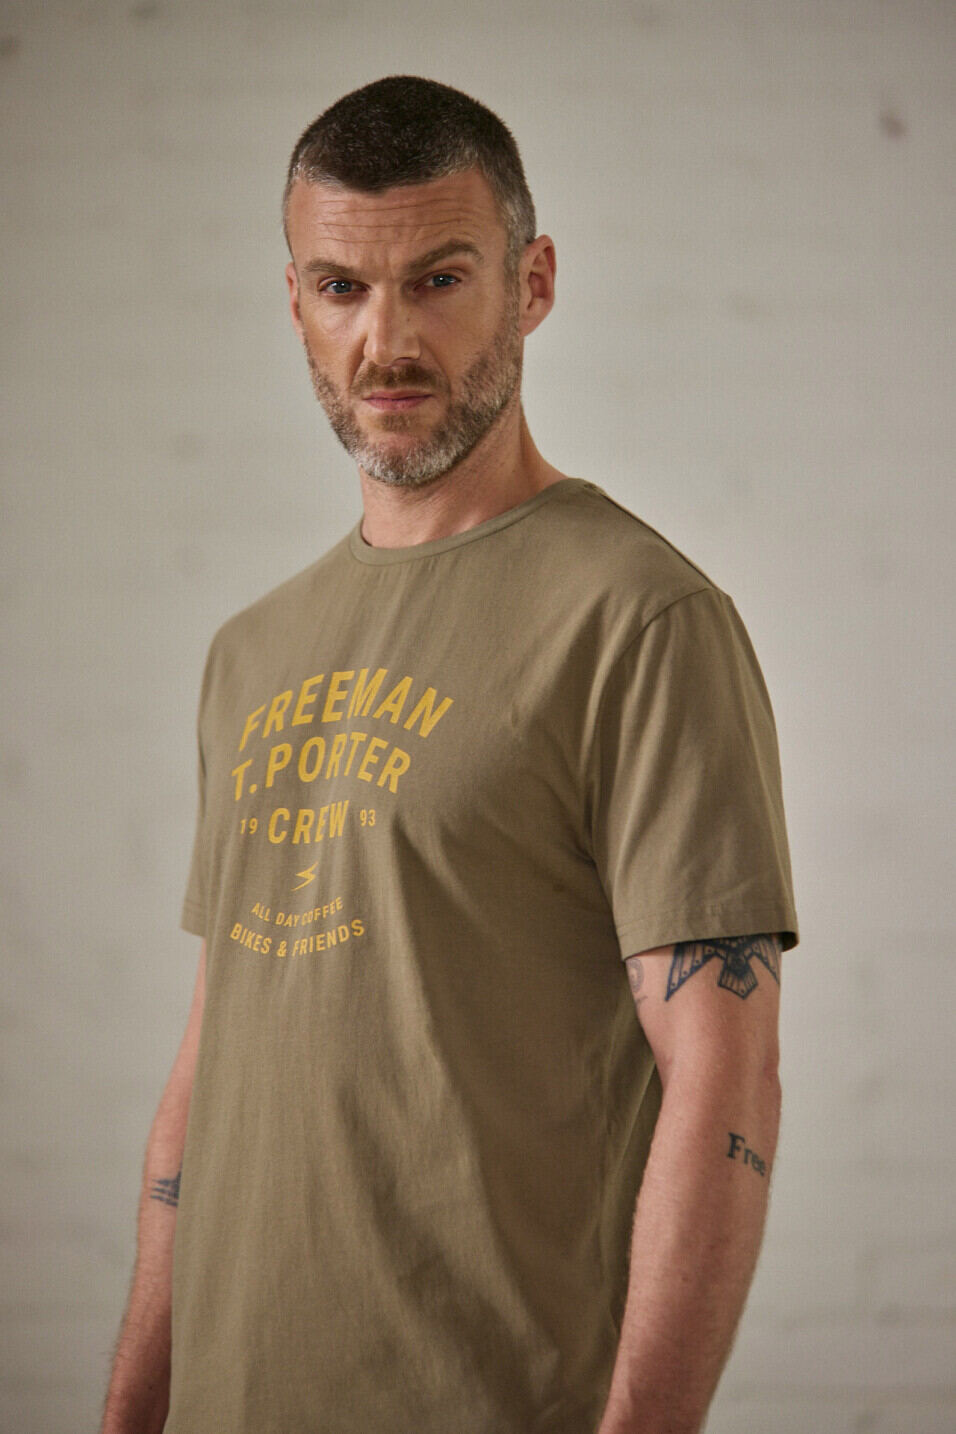 Camiseta mangas cortas Man Ivander Crew Deep lichen green | Freeman T. Porter